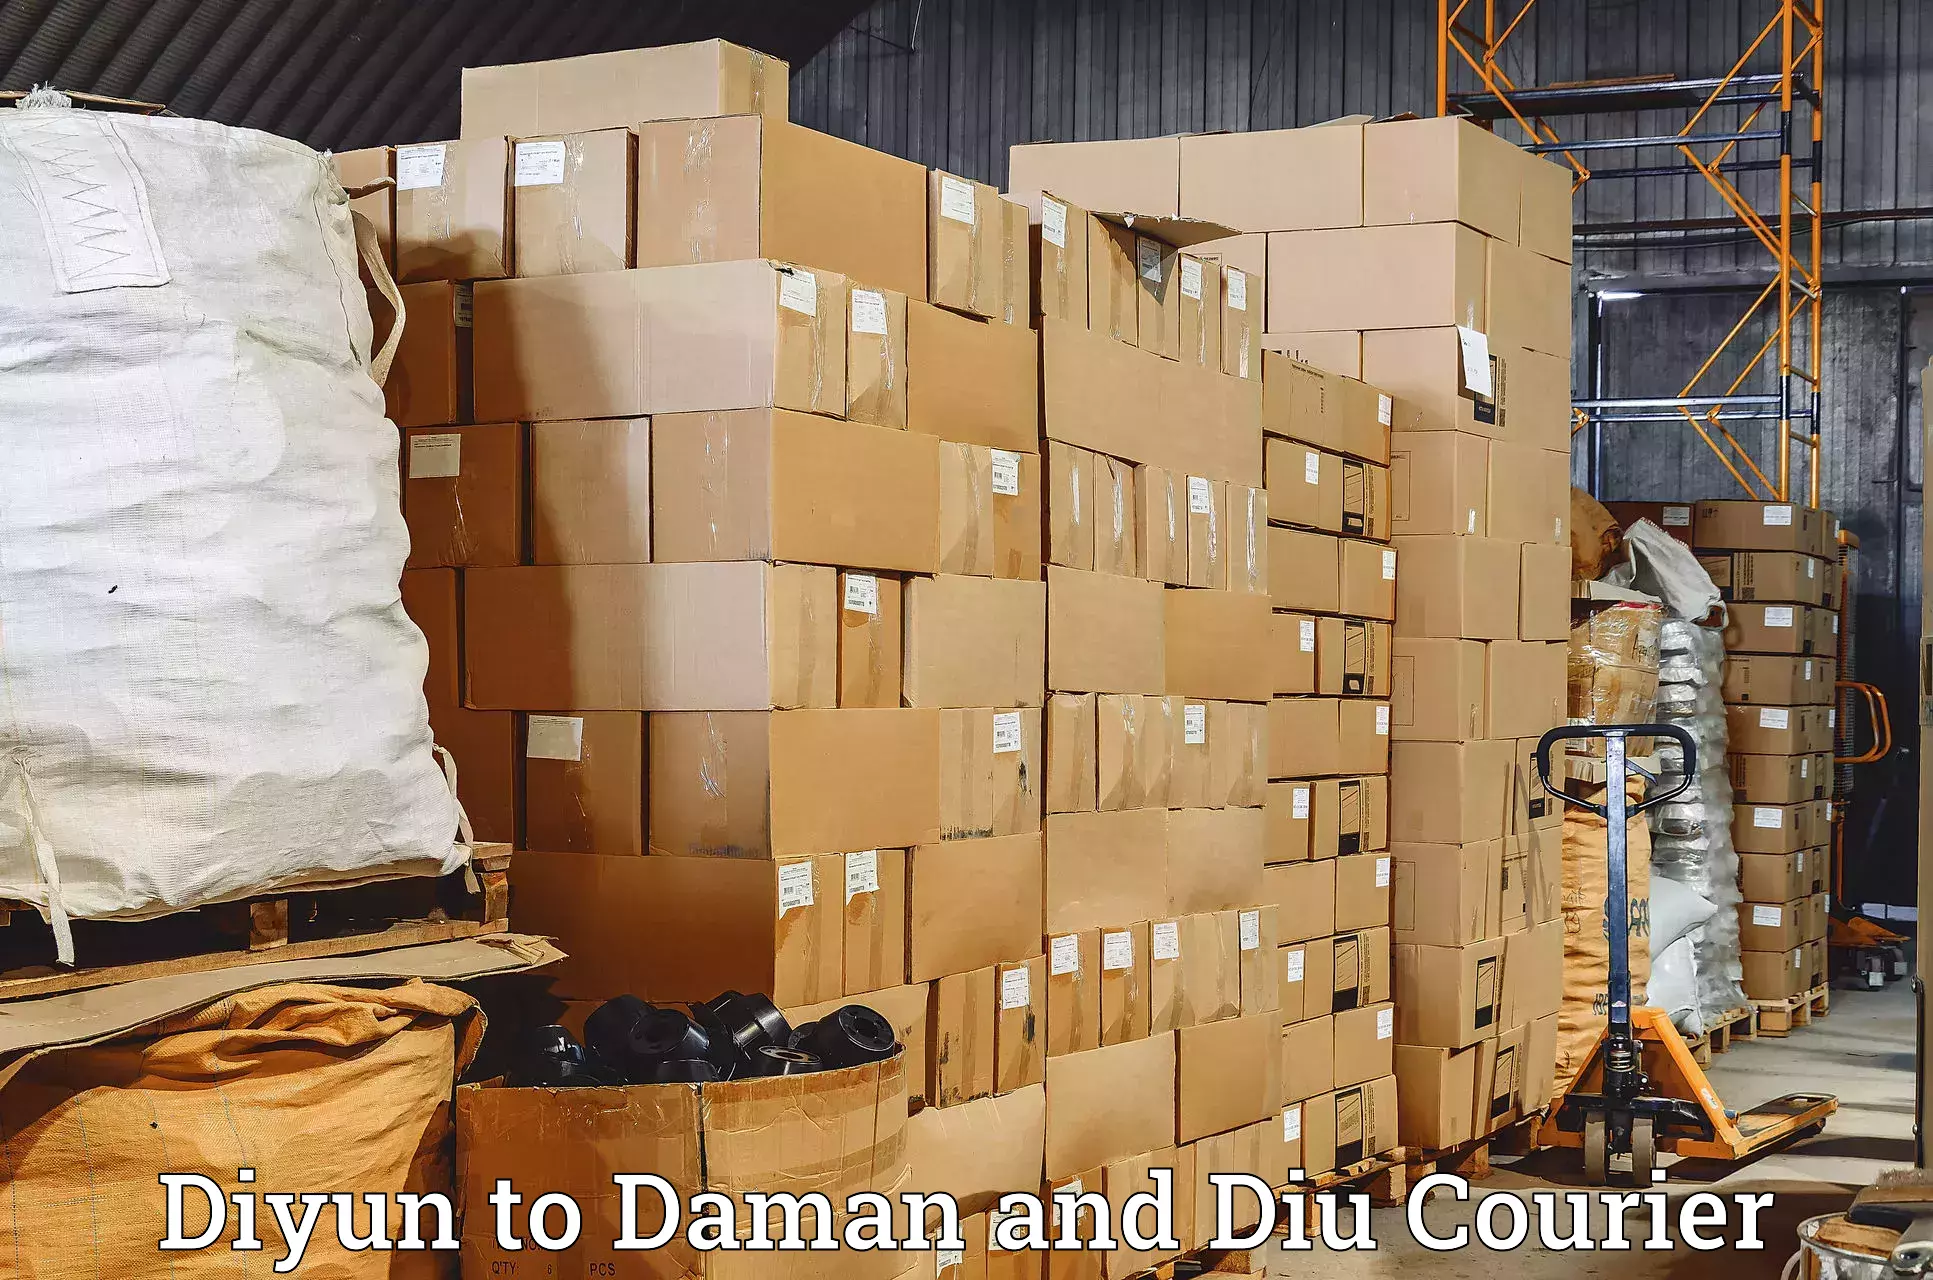 Global logistics network Diyun to Daman and Diu